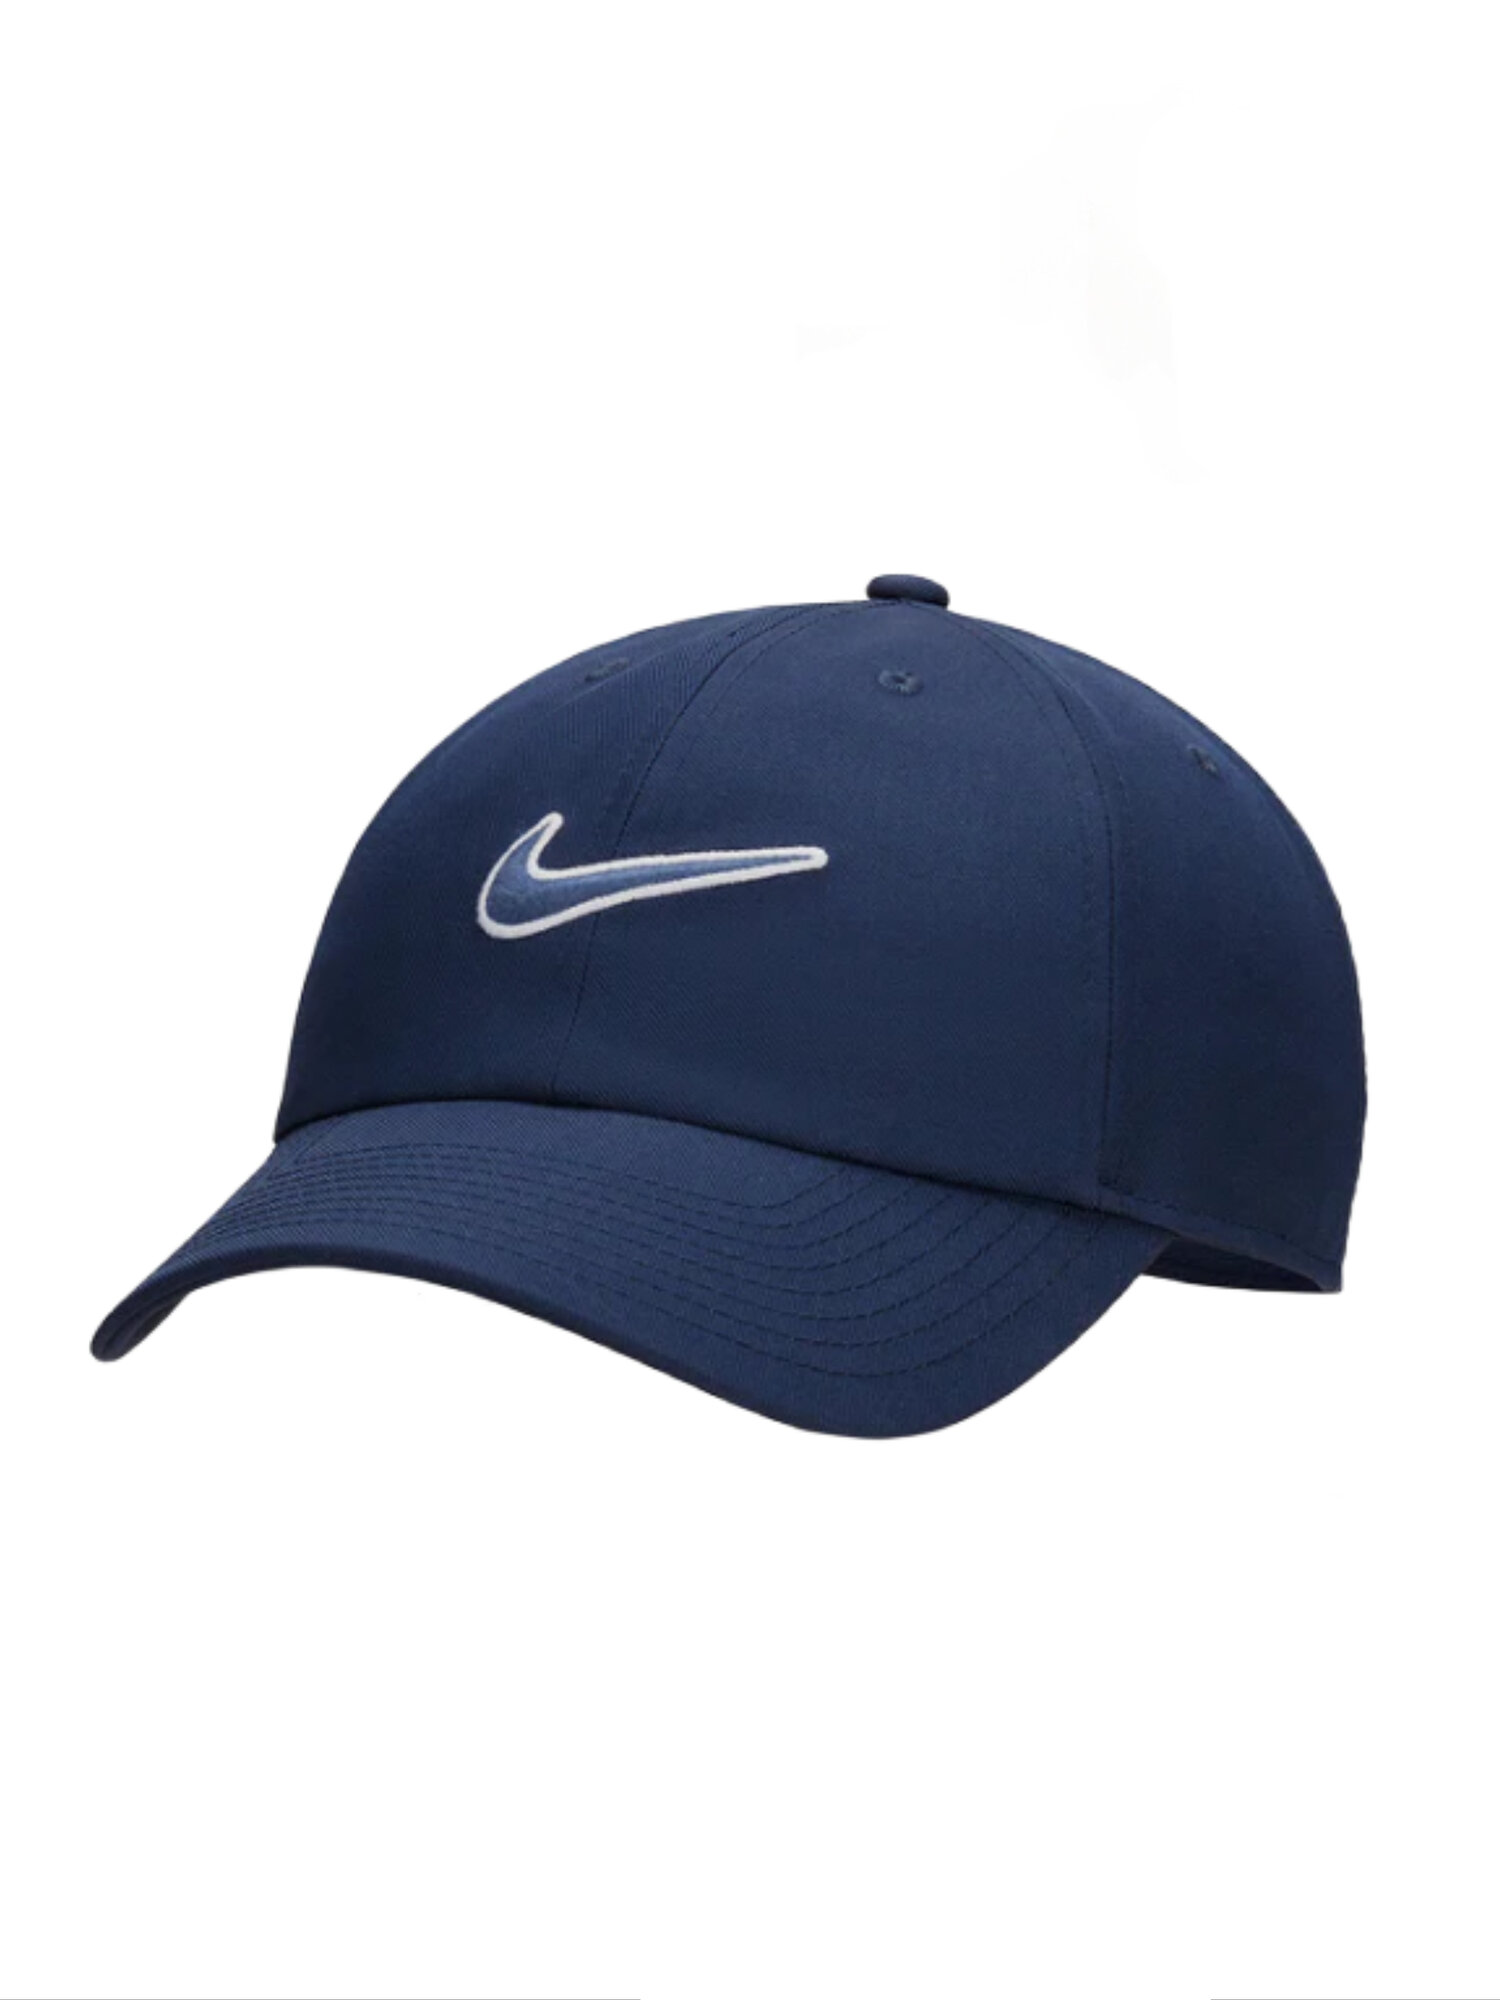 Бейсболка унисекс Nike Club Unstructured Swoosh Cap синяя, р. L/XL